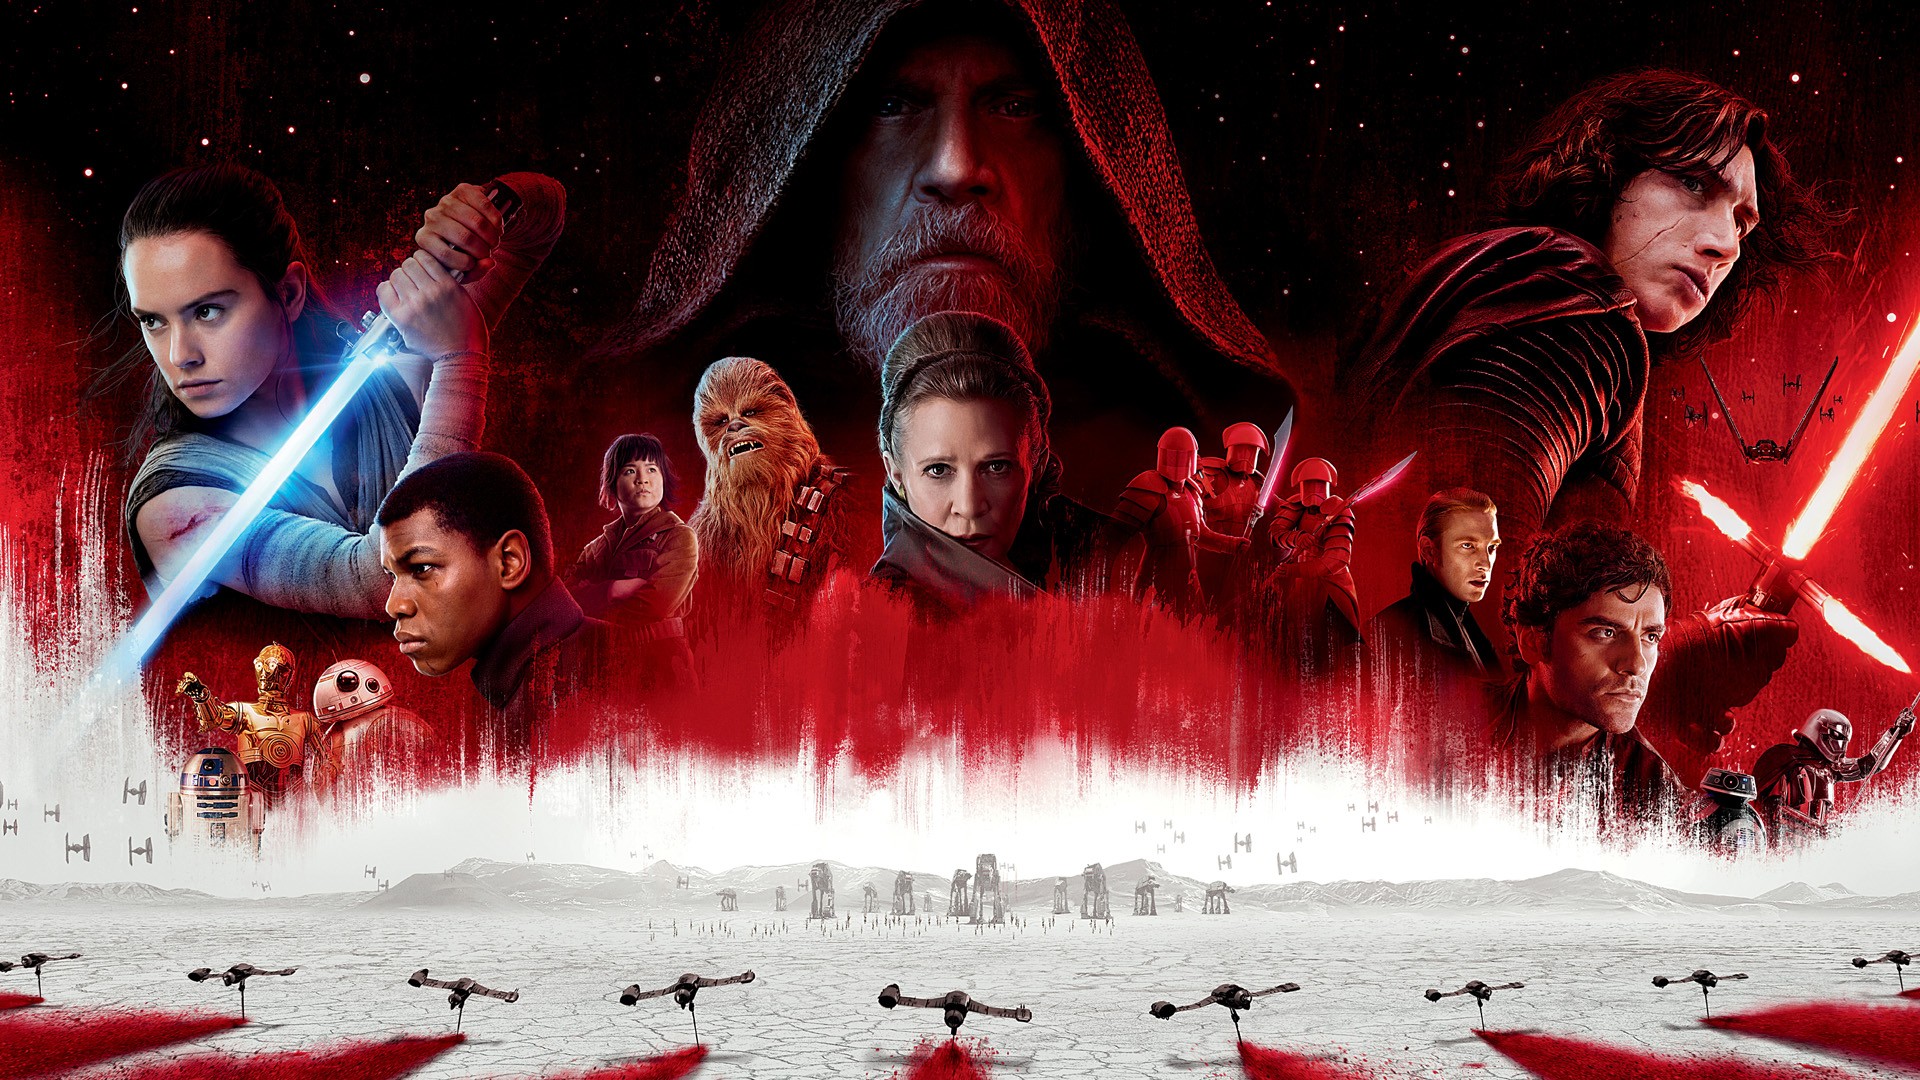 Star Wars: Episode VIII - The Last Jedi background